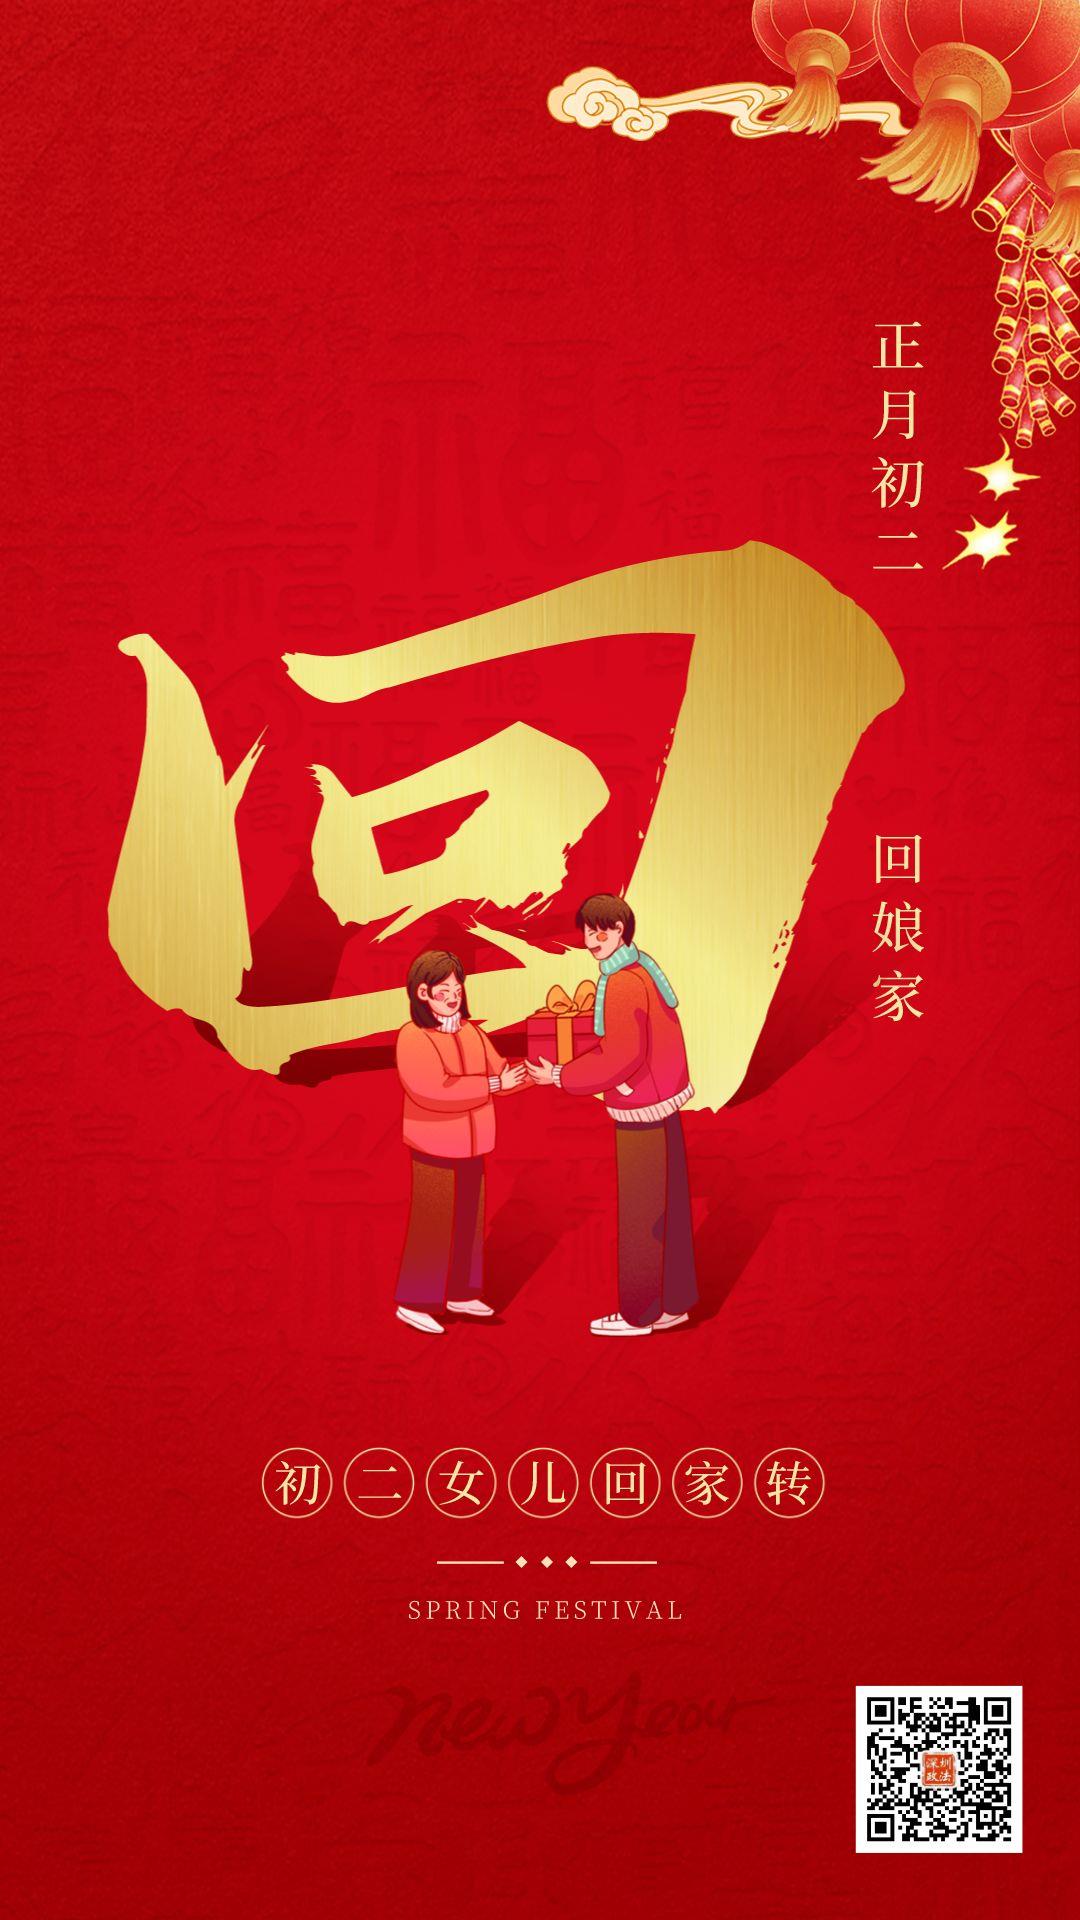 中国春节初一到初七的风俗（中国春节初一到初七的风俗是什么）-悠嘻资讯网